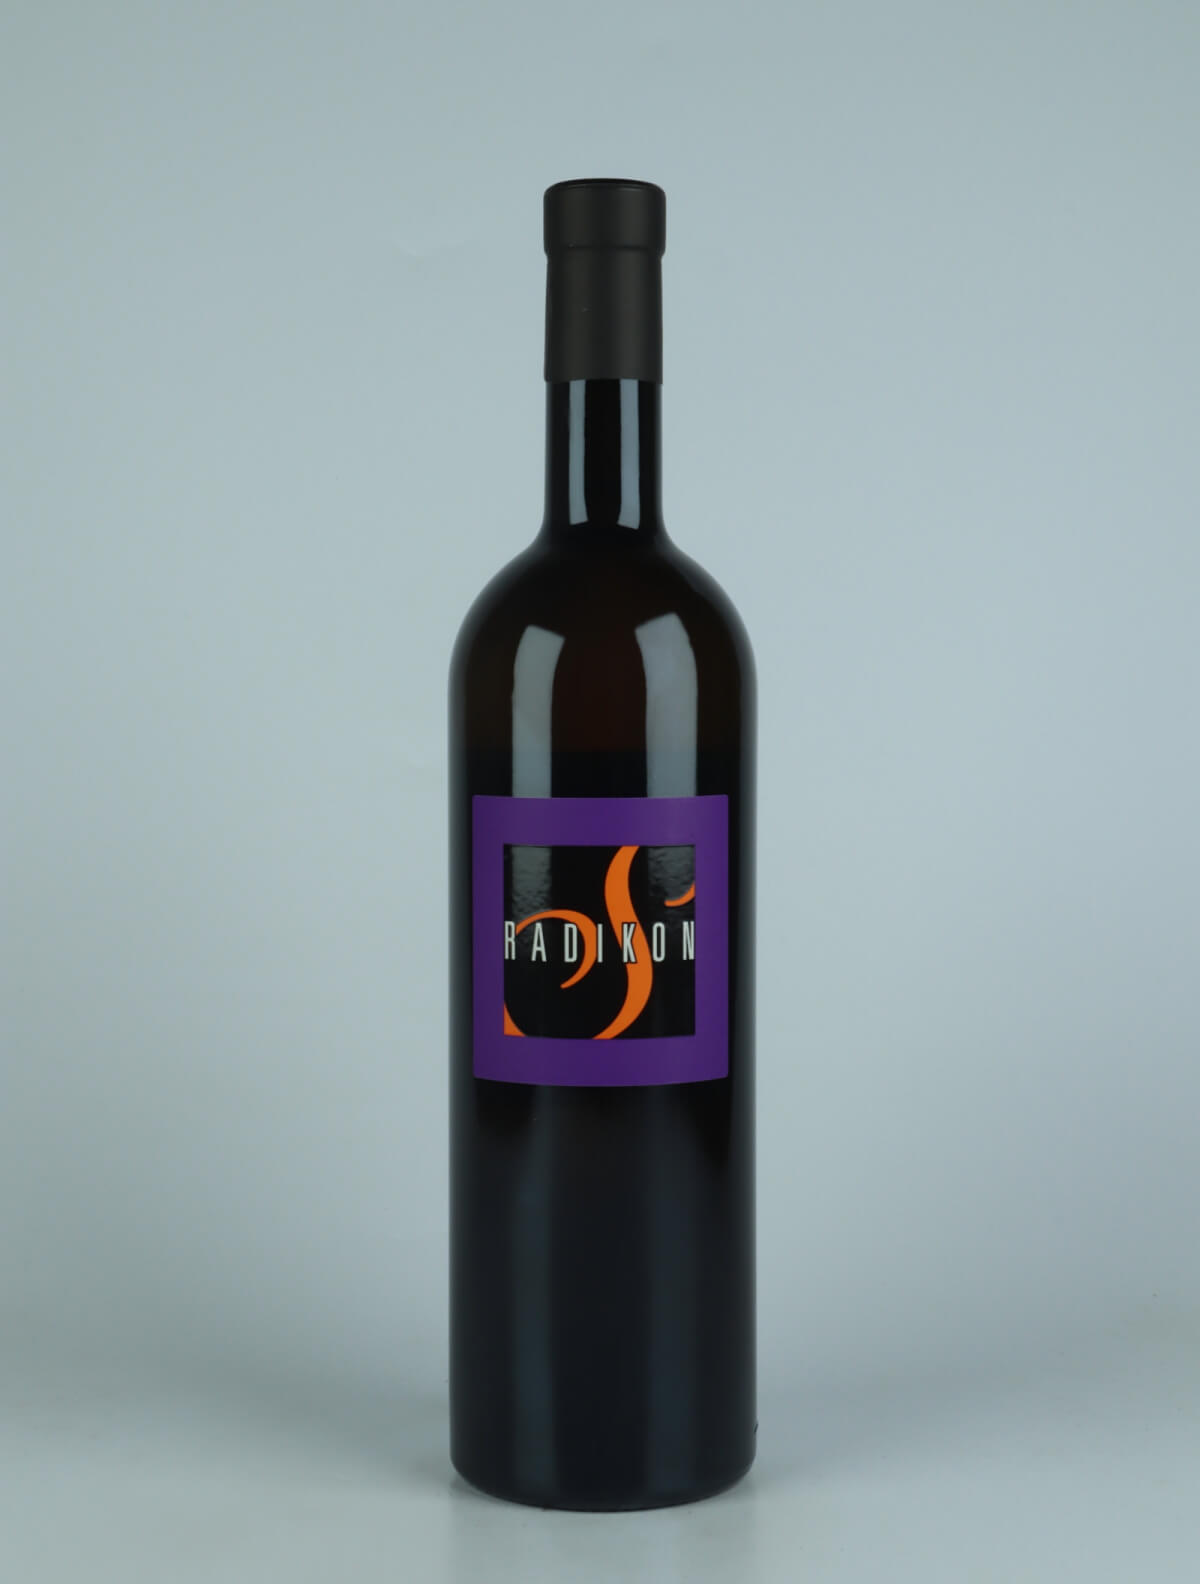 A bottle 2021 Slatnik Orange wine from Radikon, Friuli in Italy